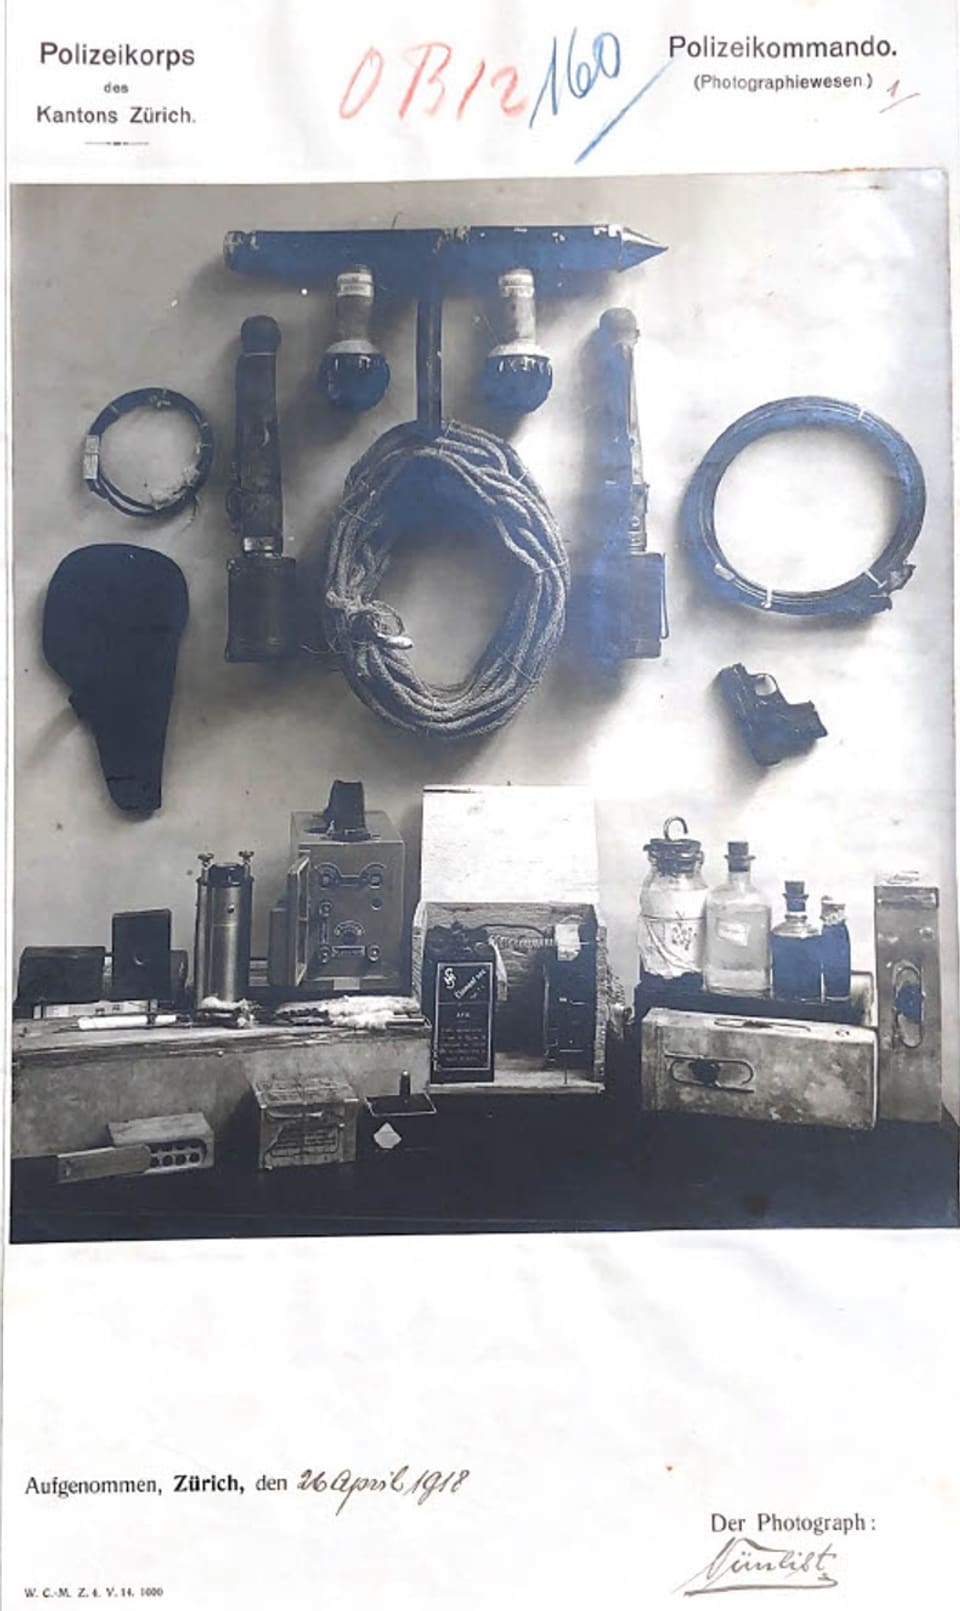 Archivfoto verschiedener Waffen wie Handgranaten, Spiritus, Pistolen und Seilen, für ein Polizeifoto arrangiert.